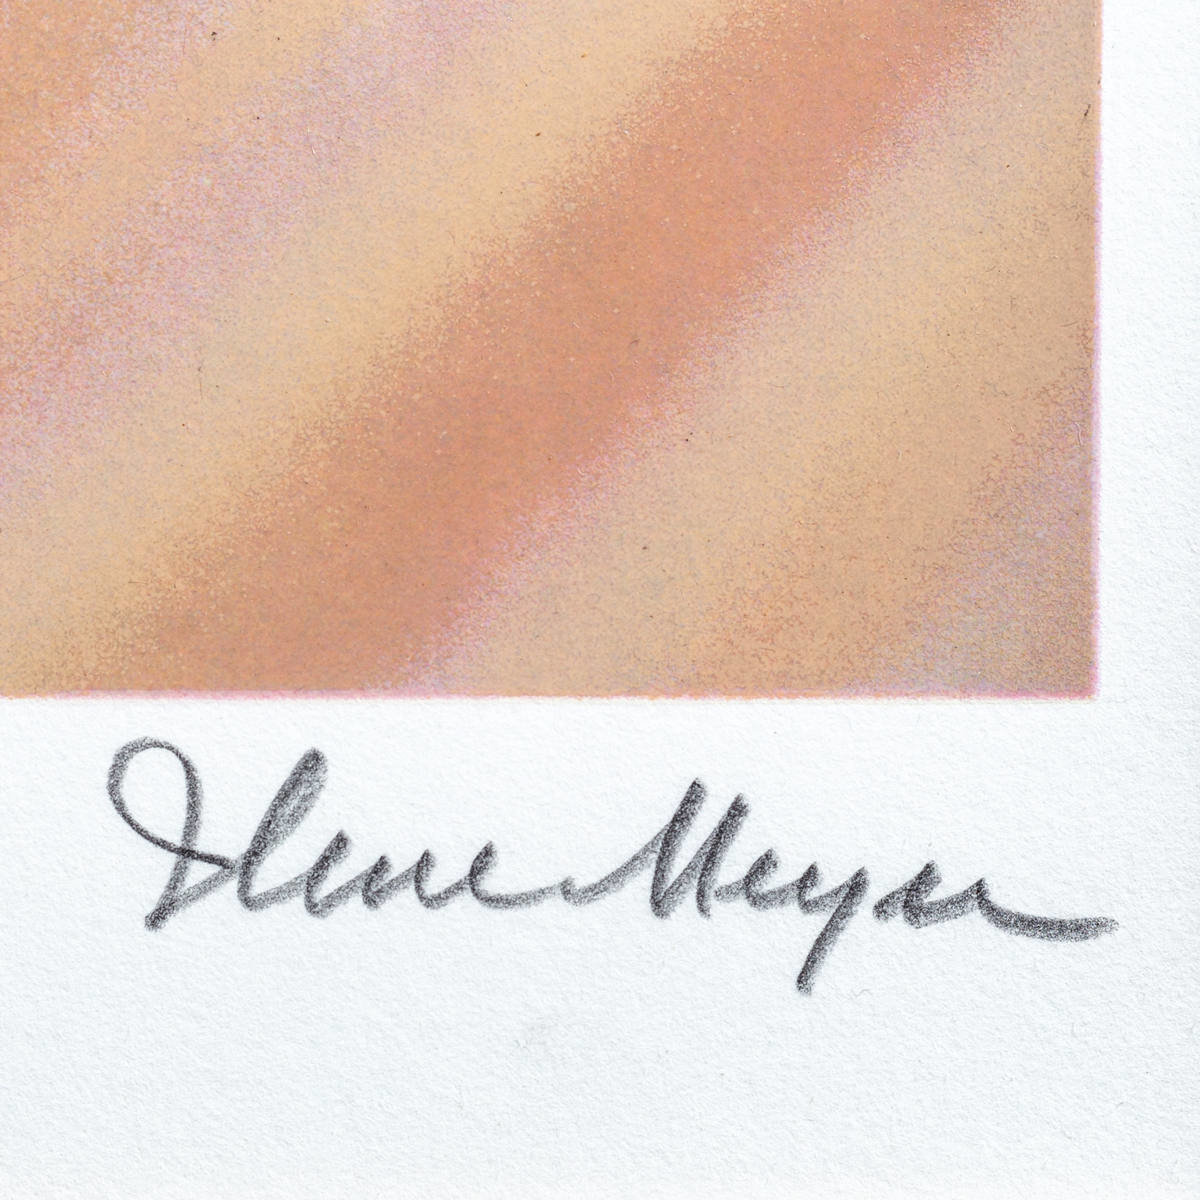 イレーヌ・メイヤー『9回目の誕生』シルクスクリーン 版画 本人 鉛筆 サイン300部限定 アールブリアン保証書付_画像5